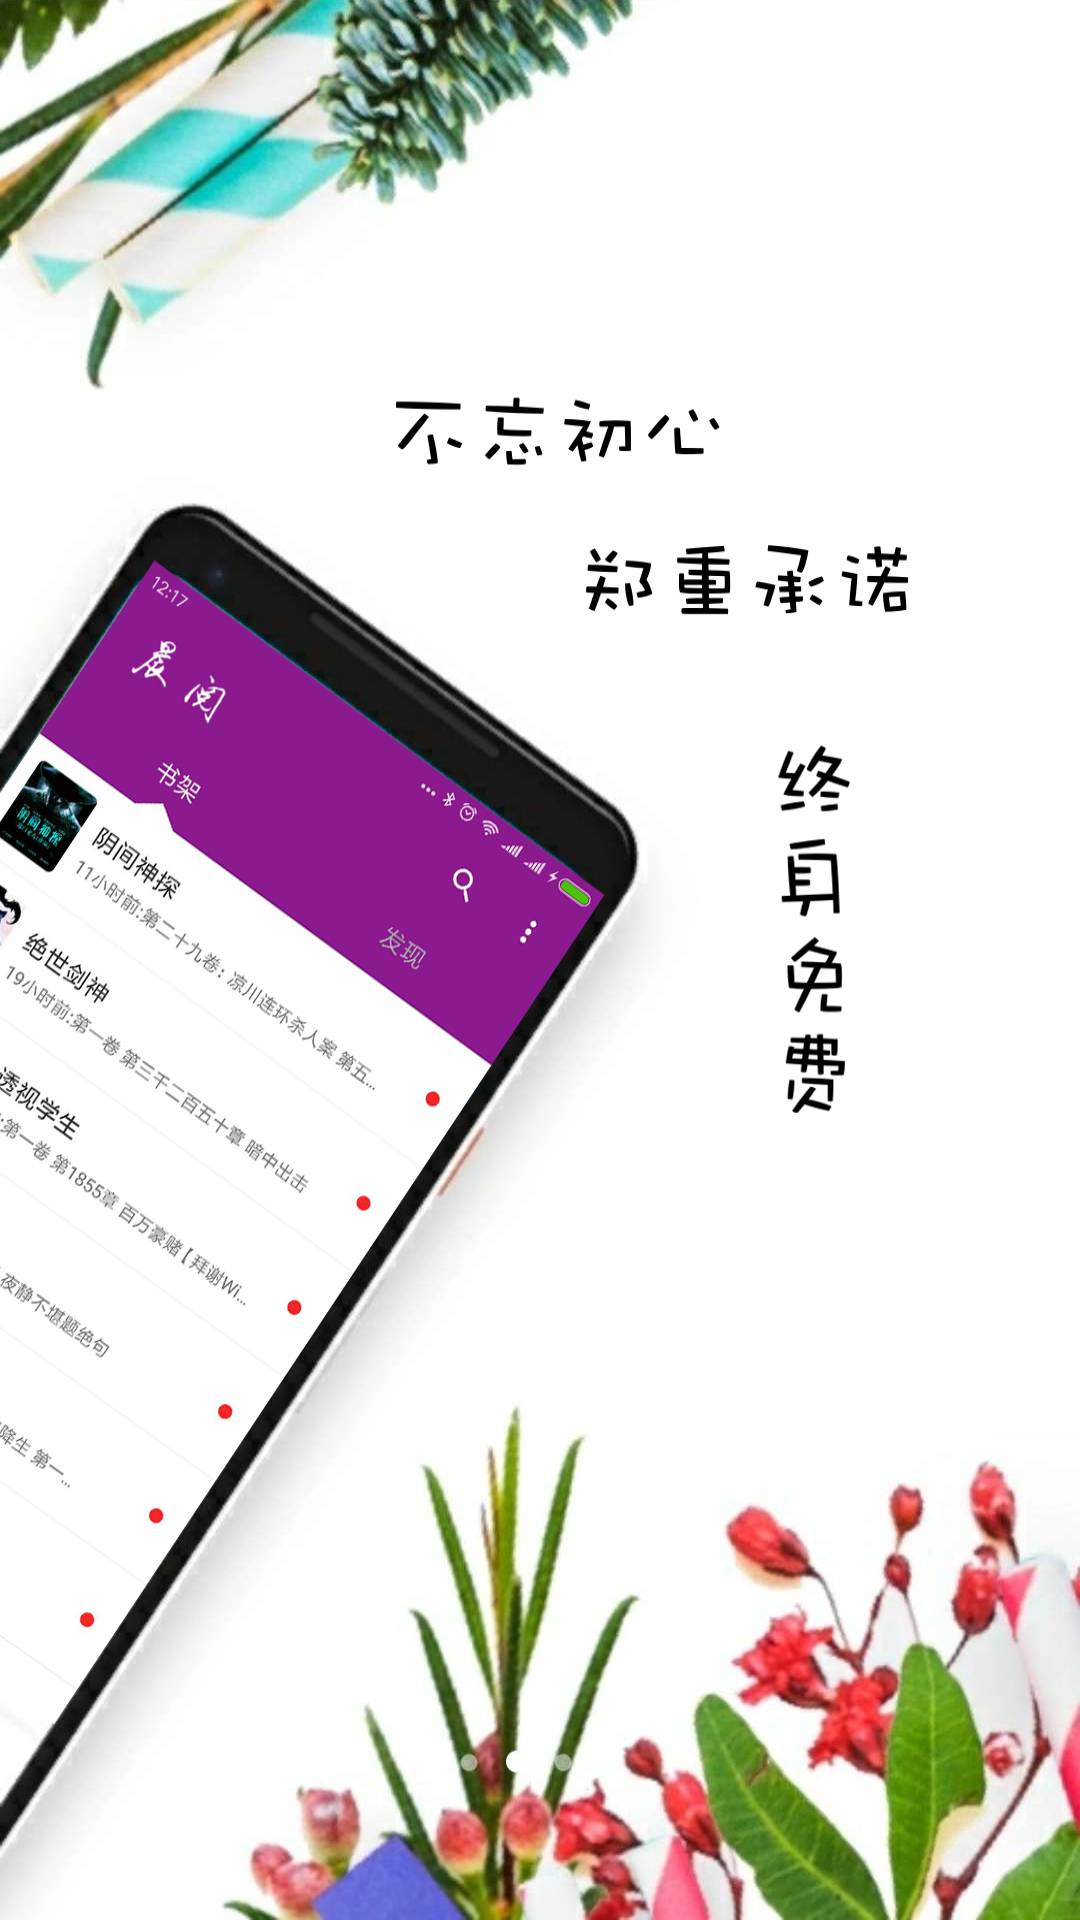 晨阅免费小说官方版下载手机软件app截图